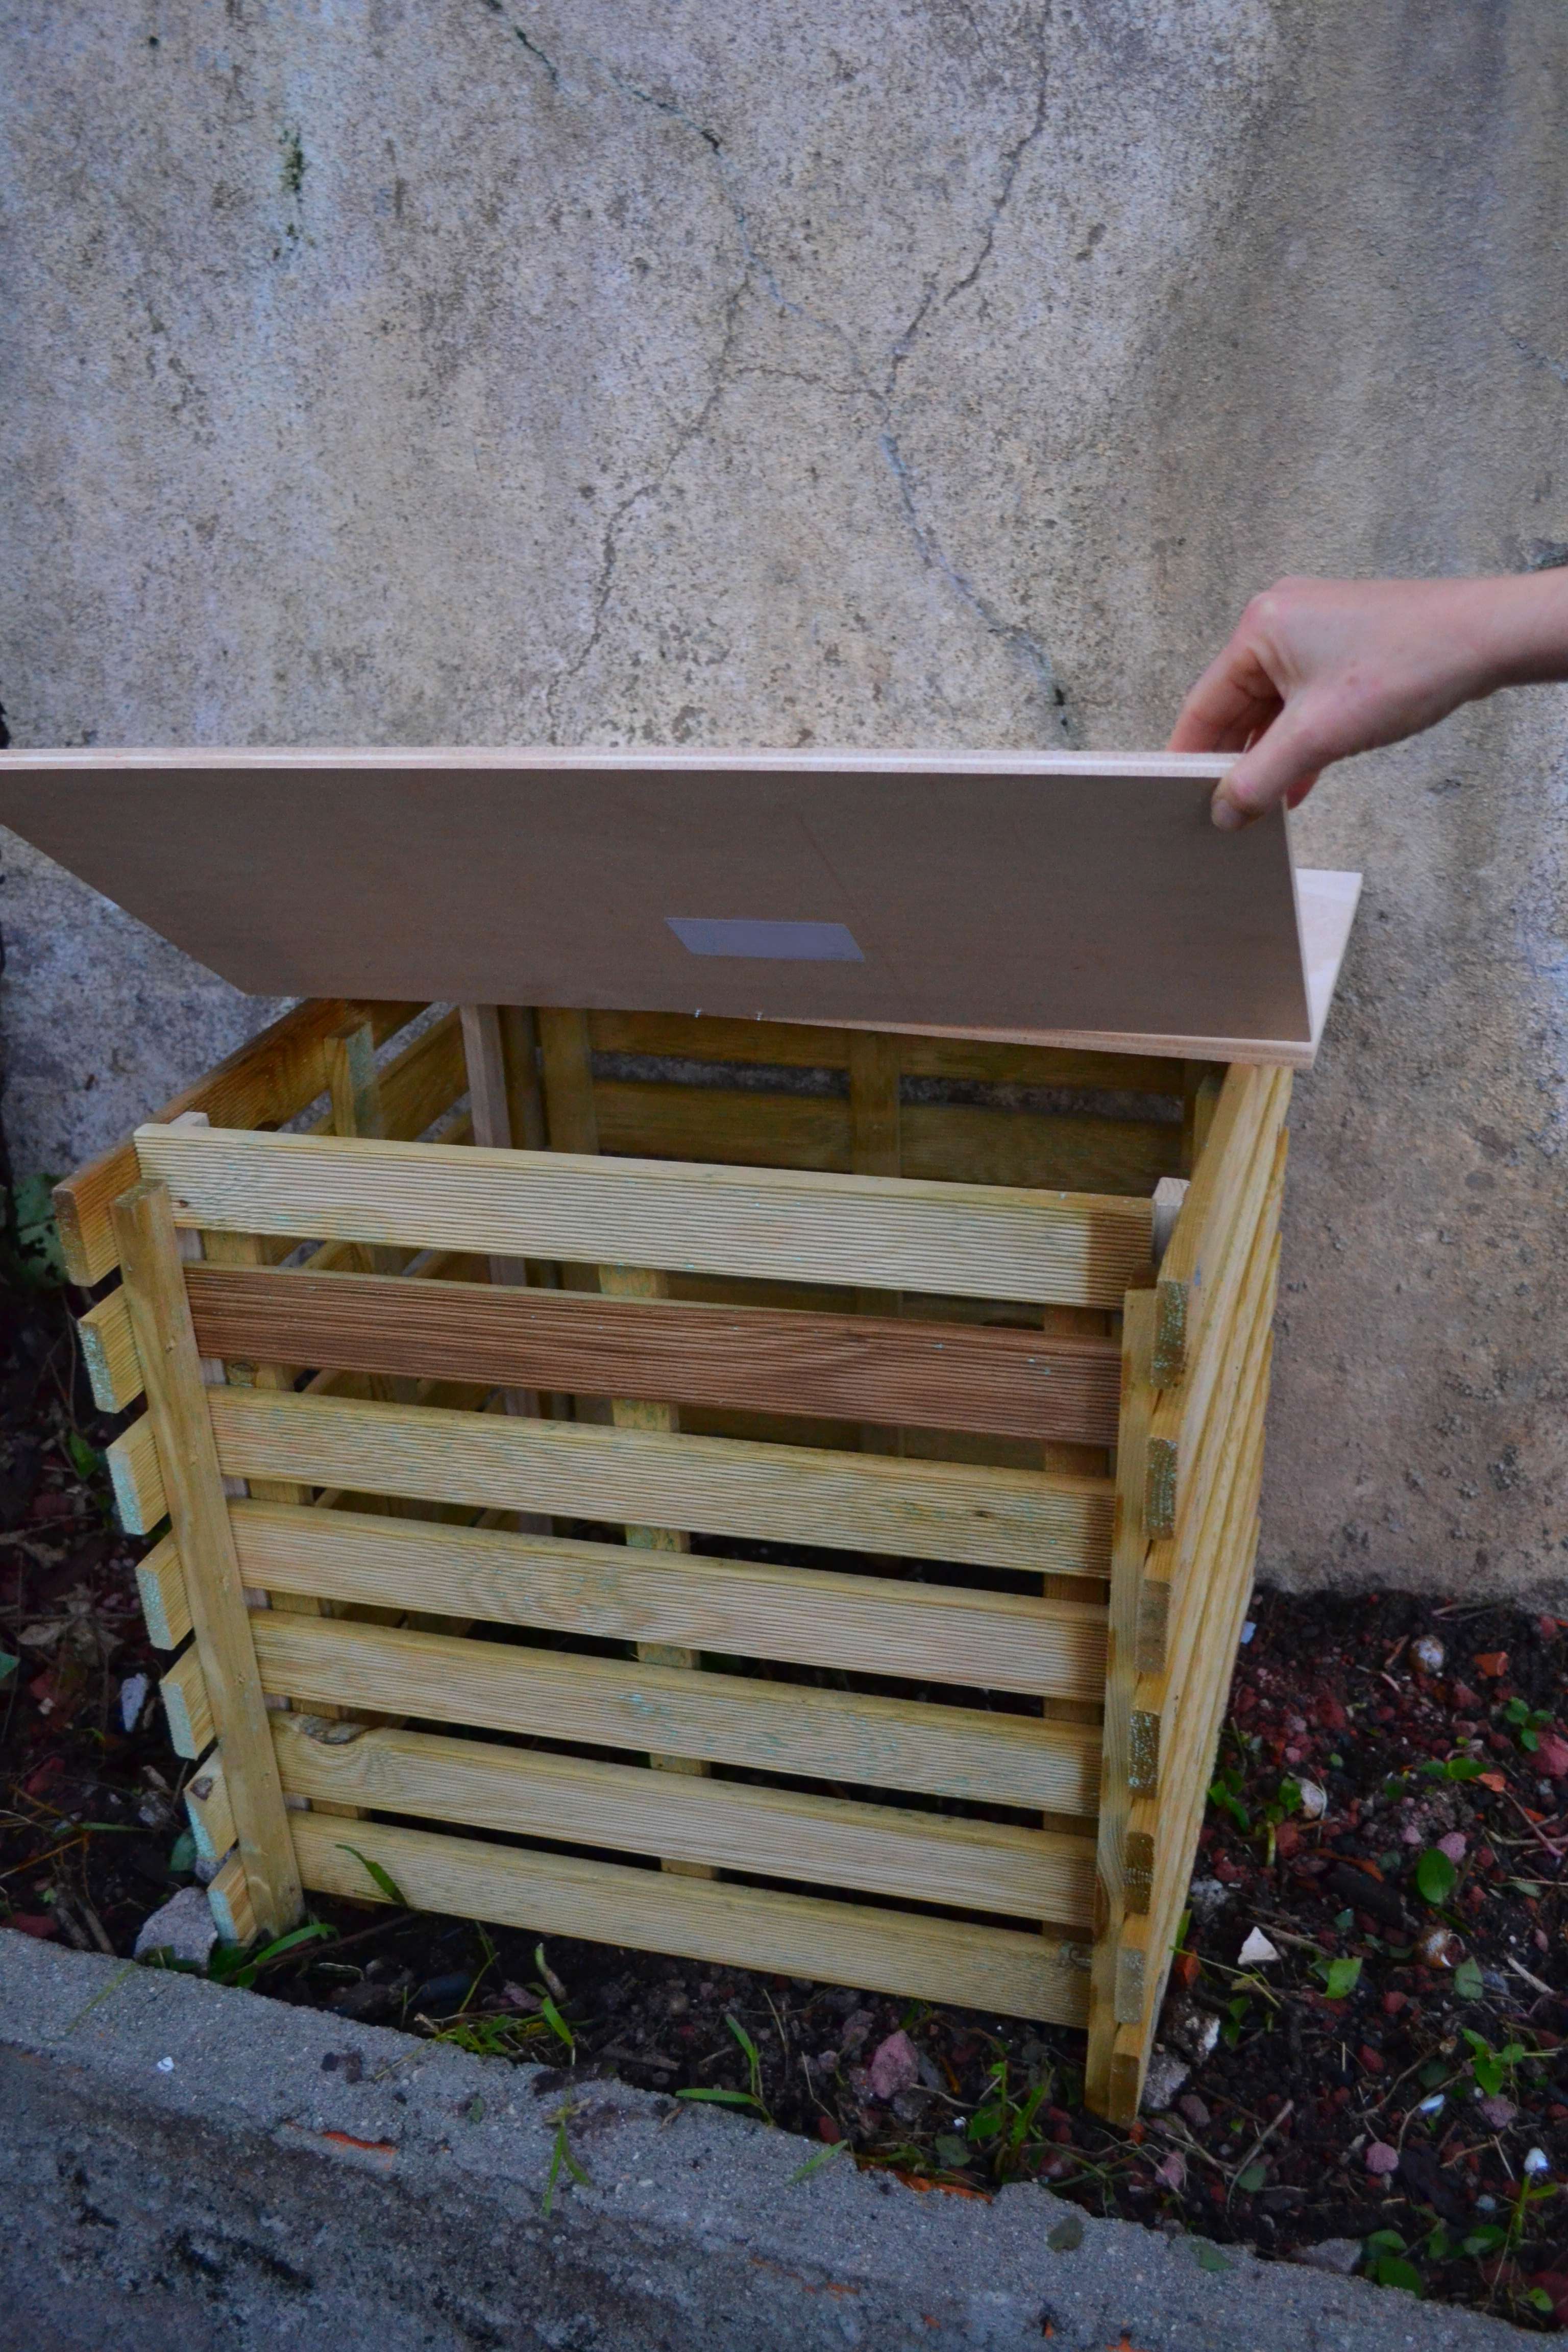 DIY : Fabriquez un composteur en récup' à partir de bois de palette